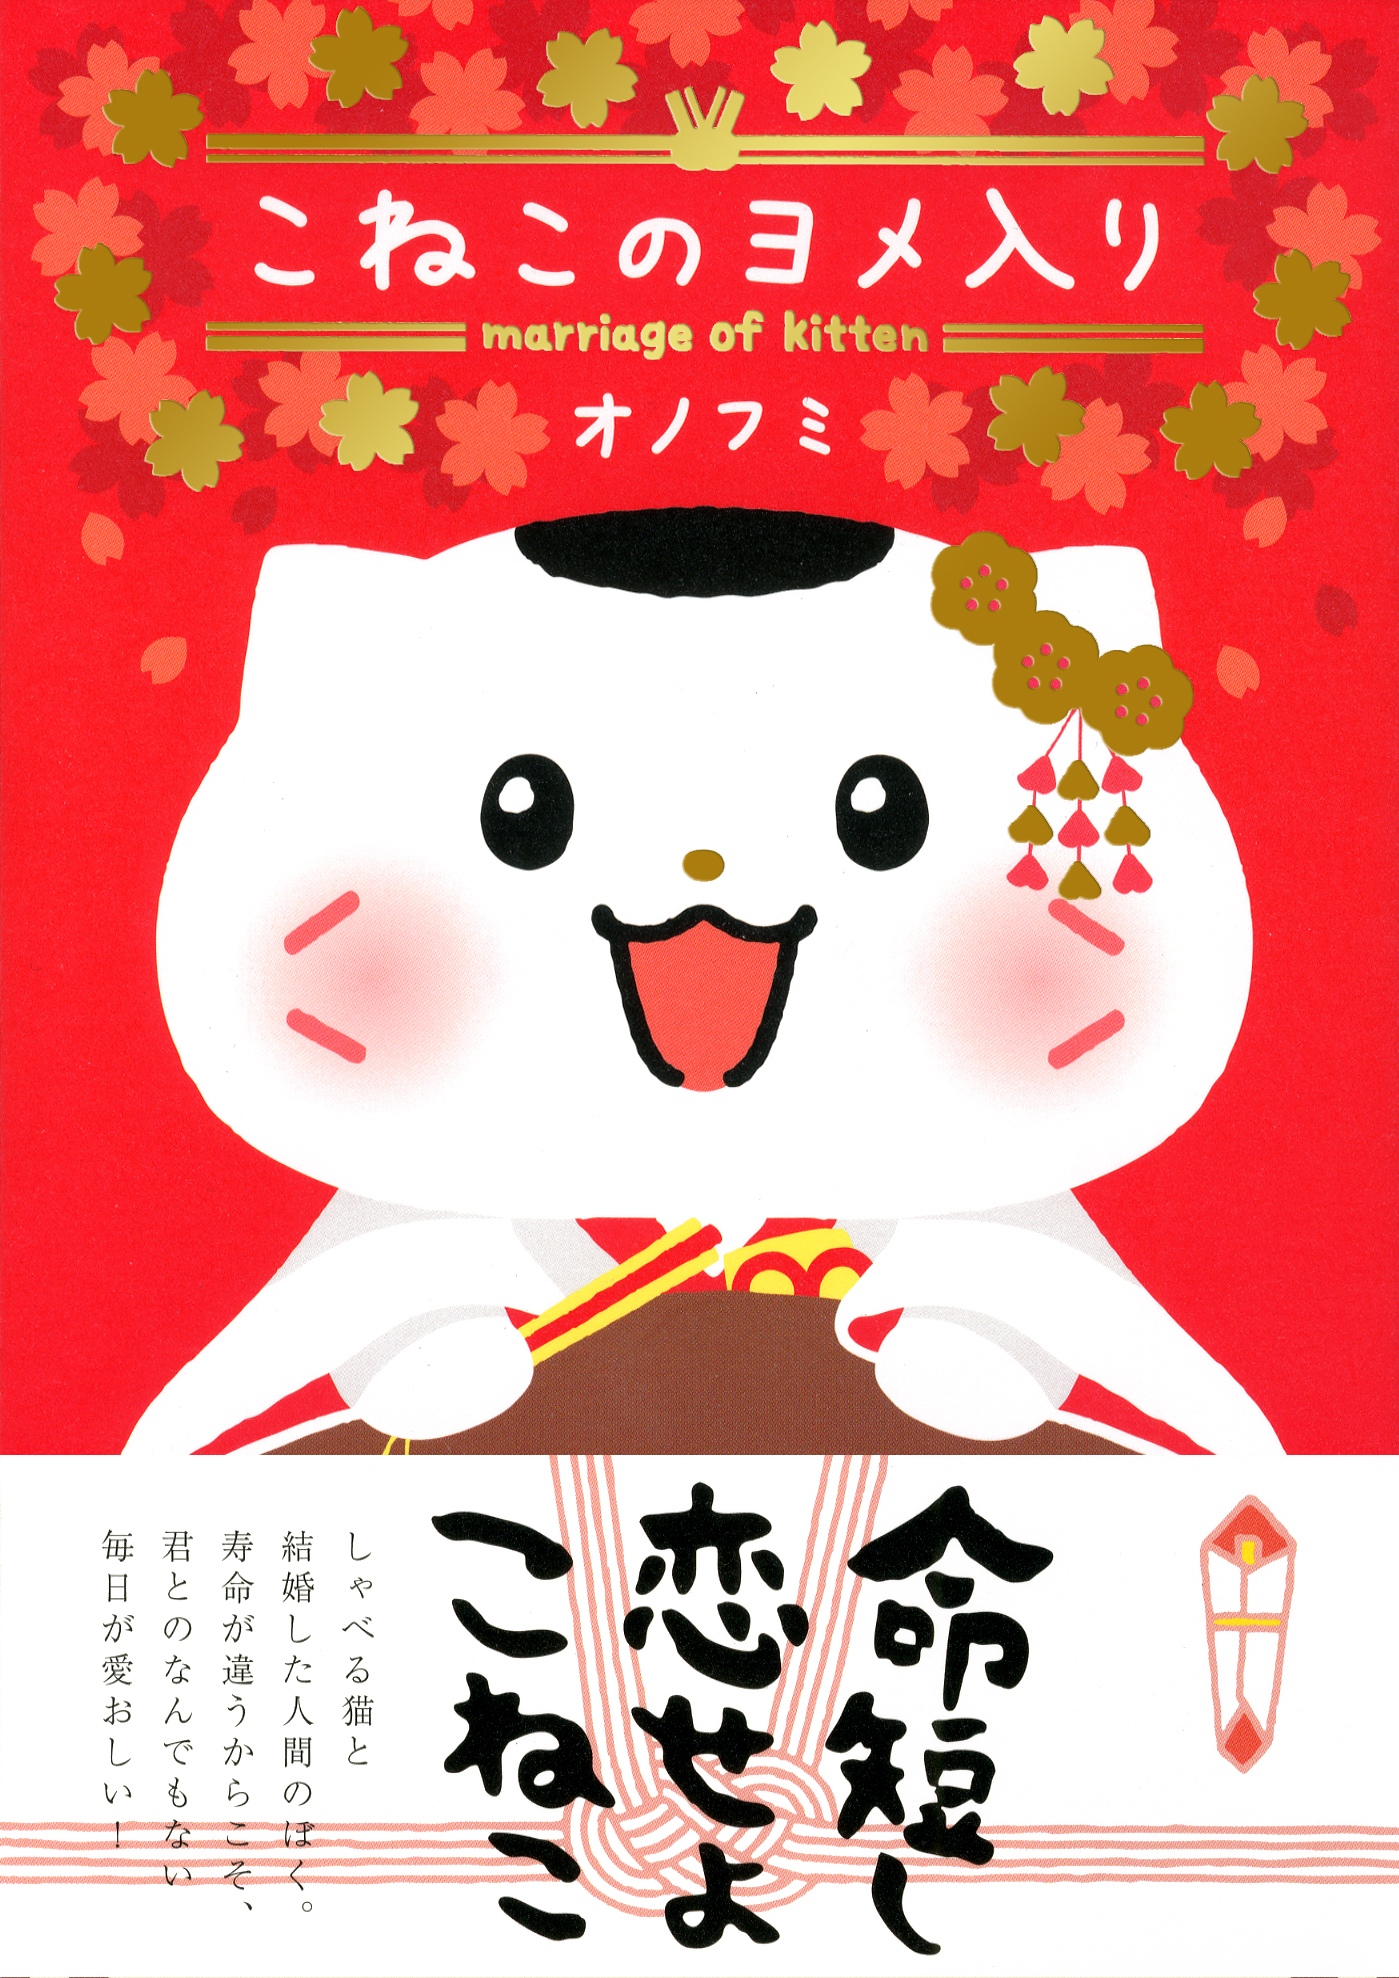 もい鳥 の作者オノフミさんが猫マンガを出版 新作 こねこのヨメ入り は メス猫と結婚した人間の男の物語 株式会社実業之日本社のプレスリリース